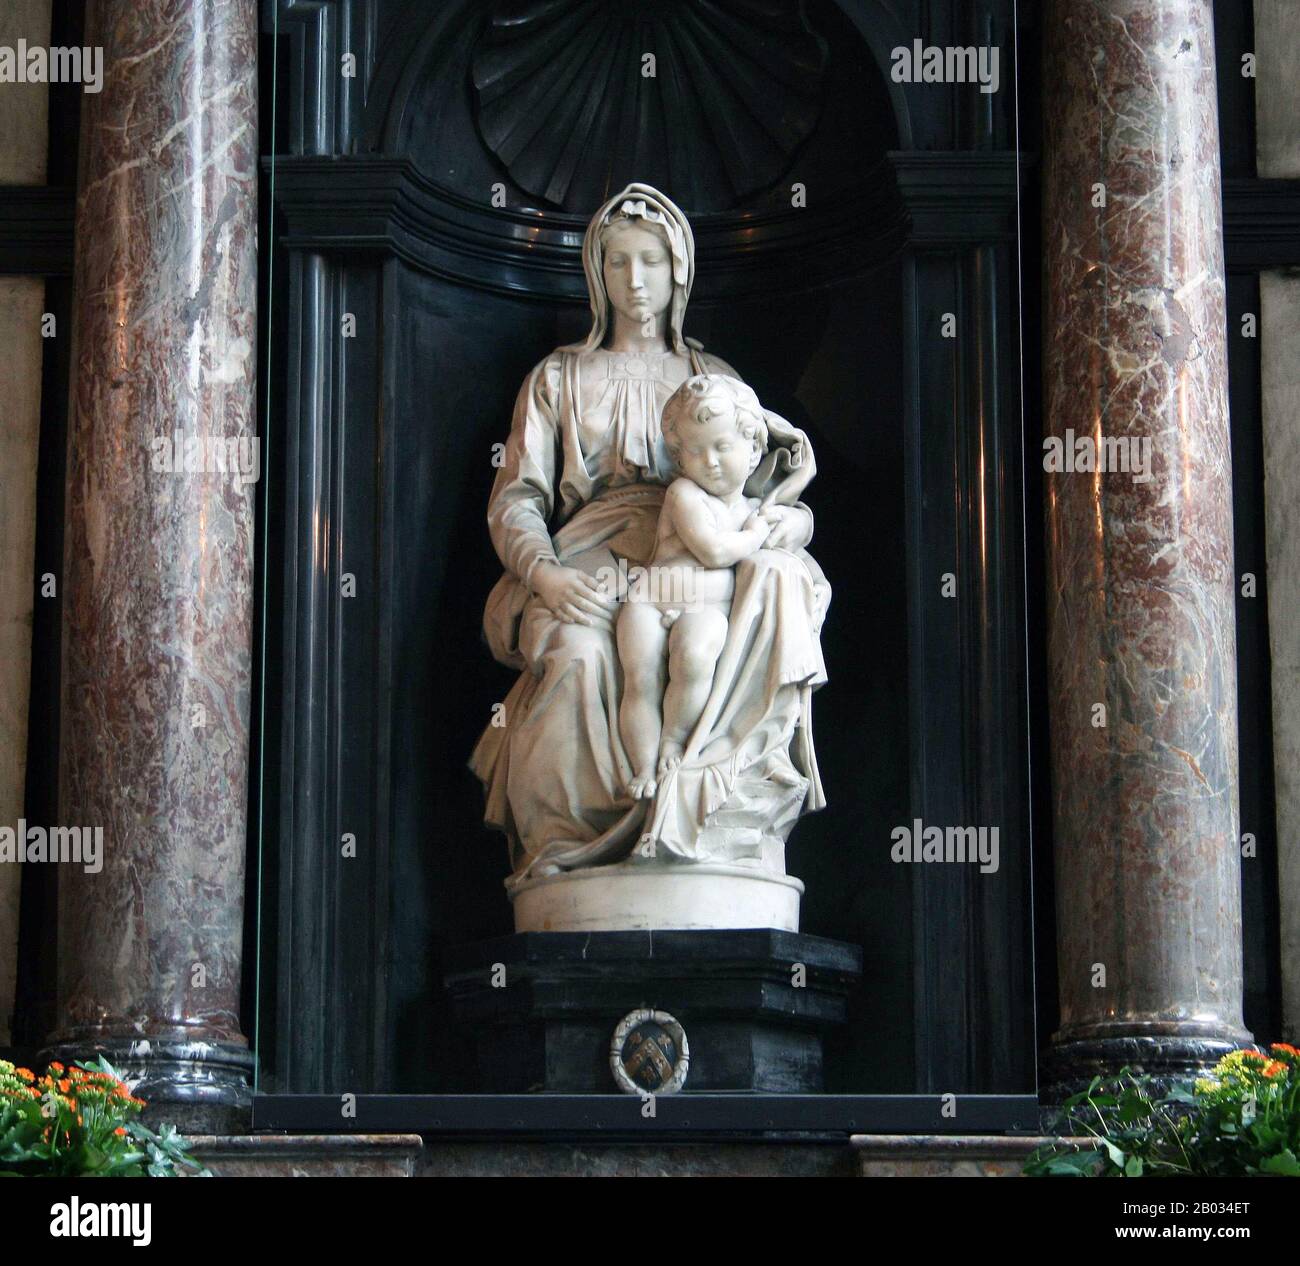 La Madonna de Bruges est une sculpture en marbre de Michel-Ange de Marie avec l'enfant Jésus. Considéré comme un chef-d'œuvre, il a été volé par les forces allemandes dans le cadre de leur programme de 'sous nazi' en 1944. Il a été récupéré un an plus tard par les forces alliées à la mine de sel d'Altaussee dans le centre de l'Autriche et retourné en toute sécurité à Bruges, où il reste aujourd'hui. Banque D'Images